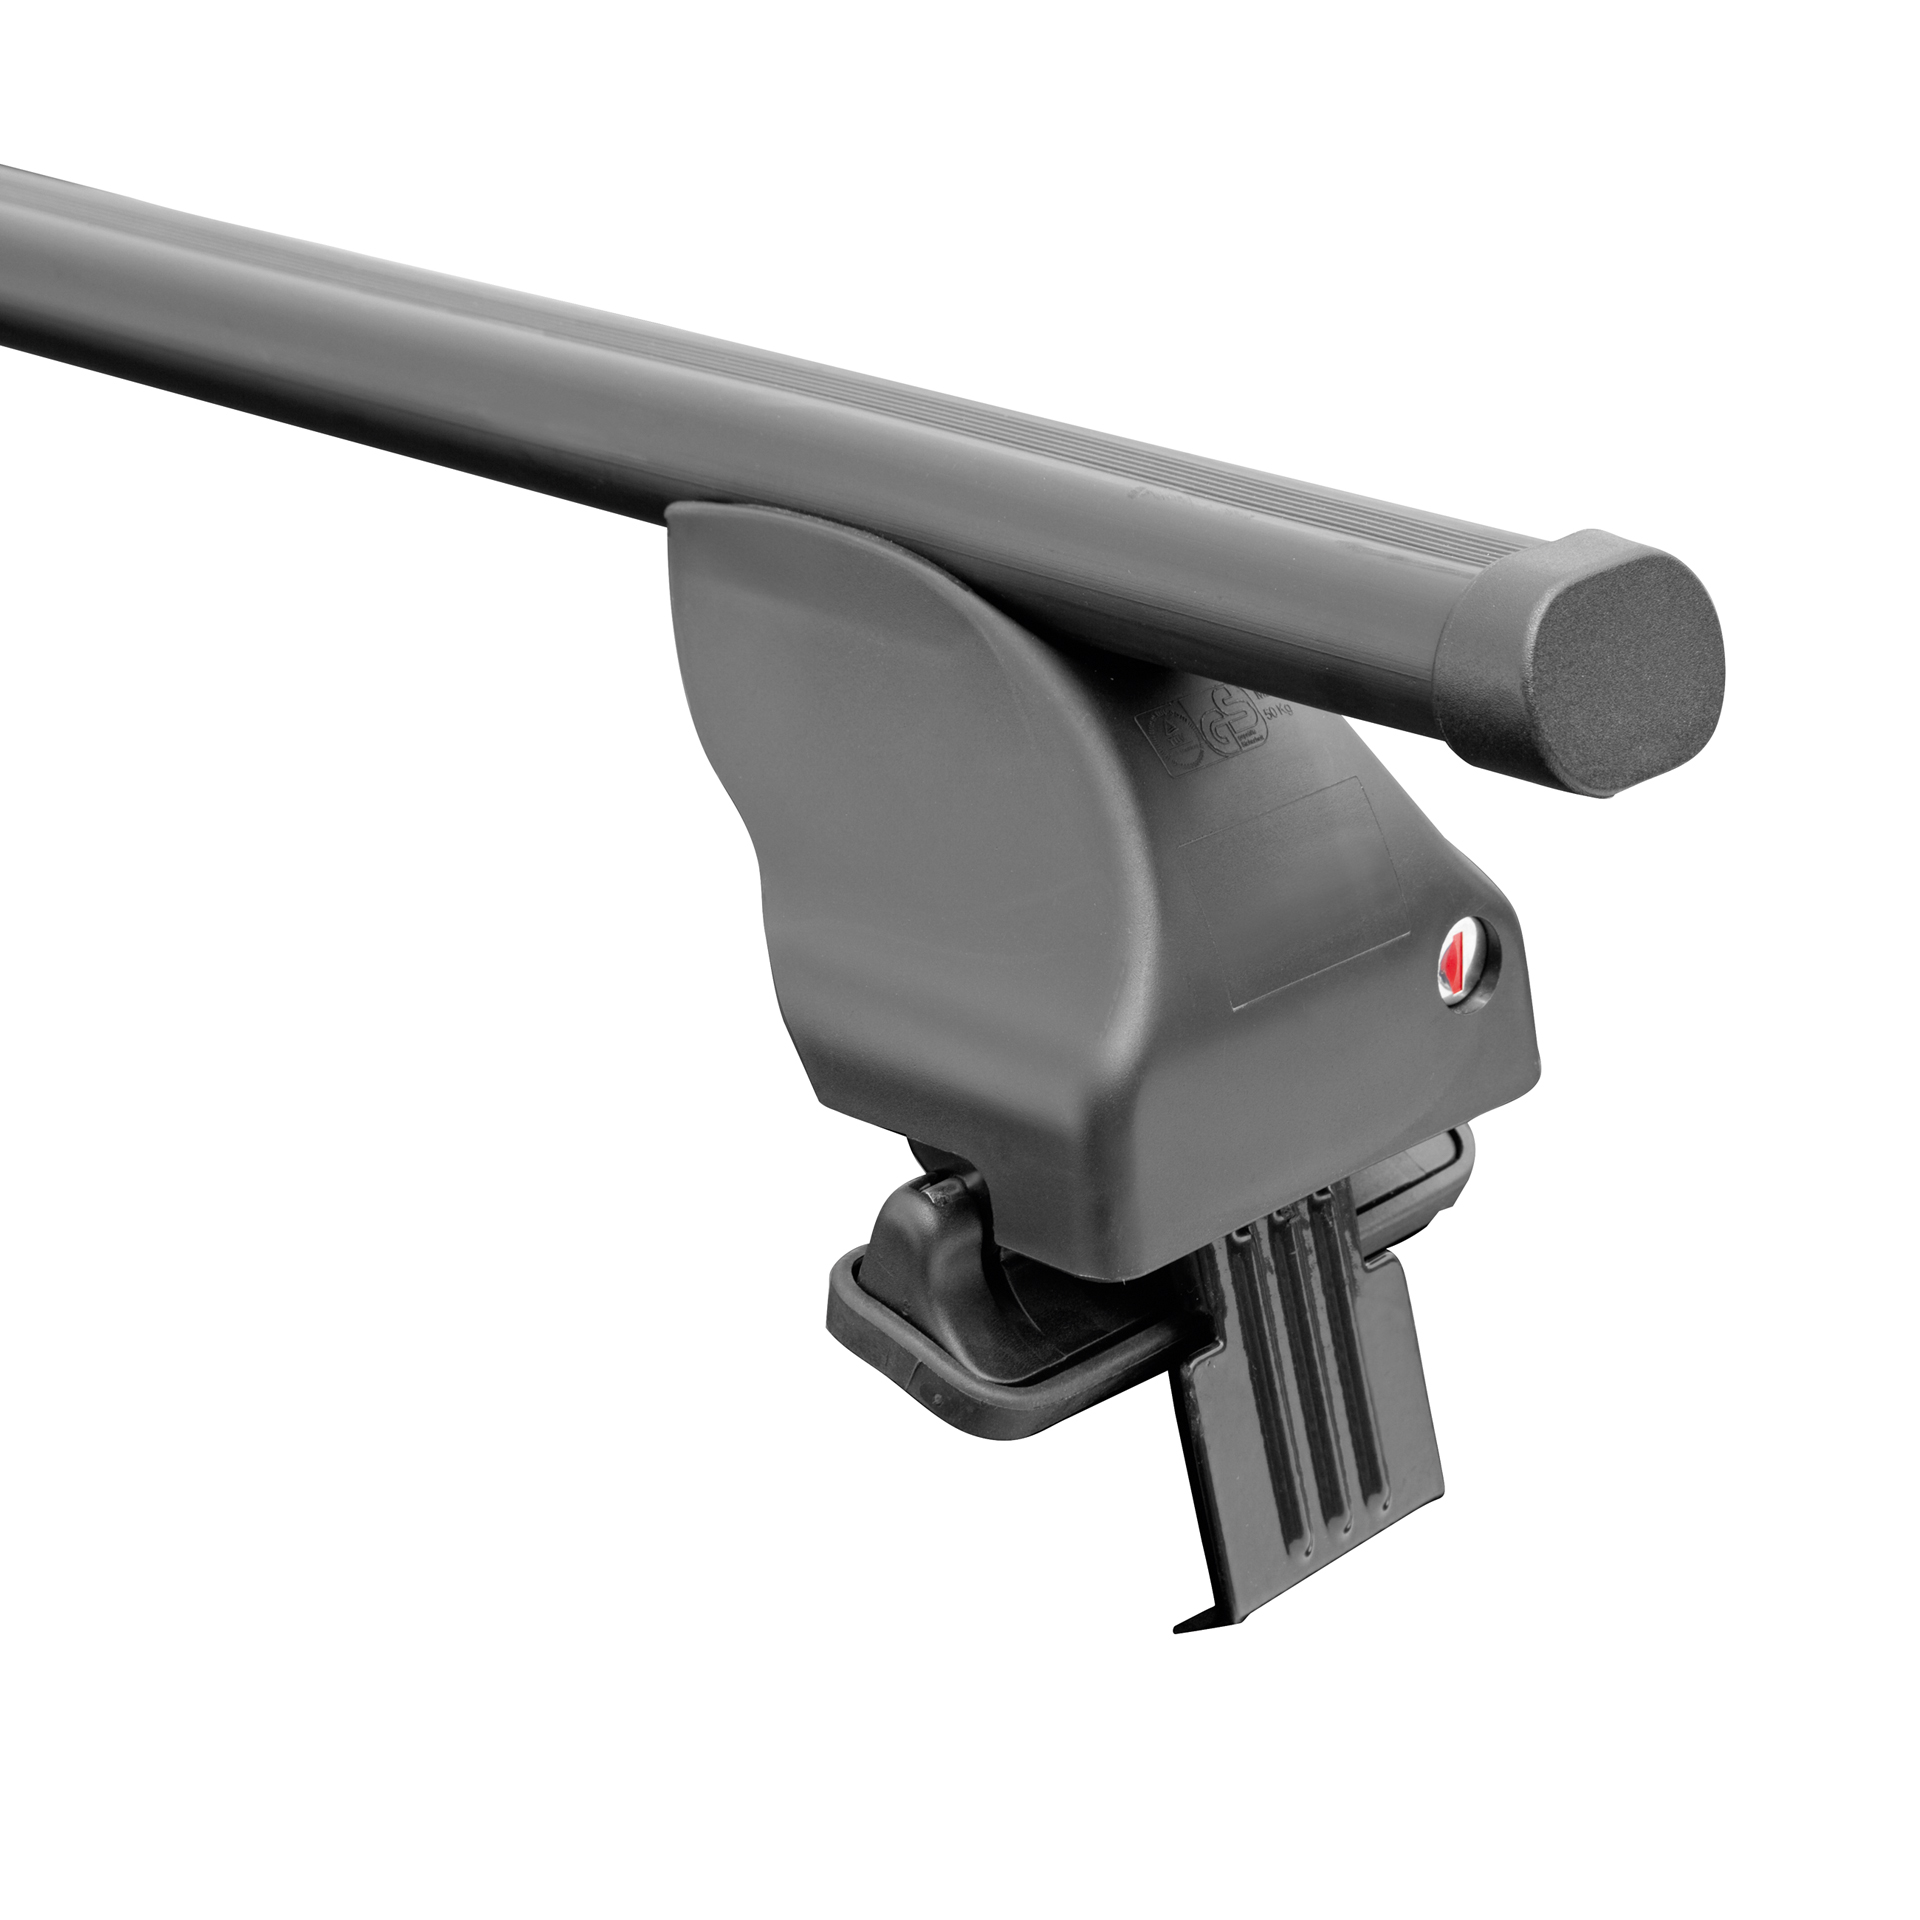 Twinny Load Dakdragerset Staal S99 voor diverse modellen met gesloten railing (7914148)